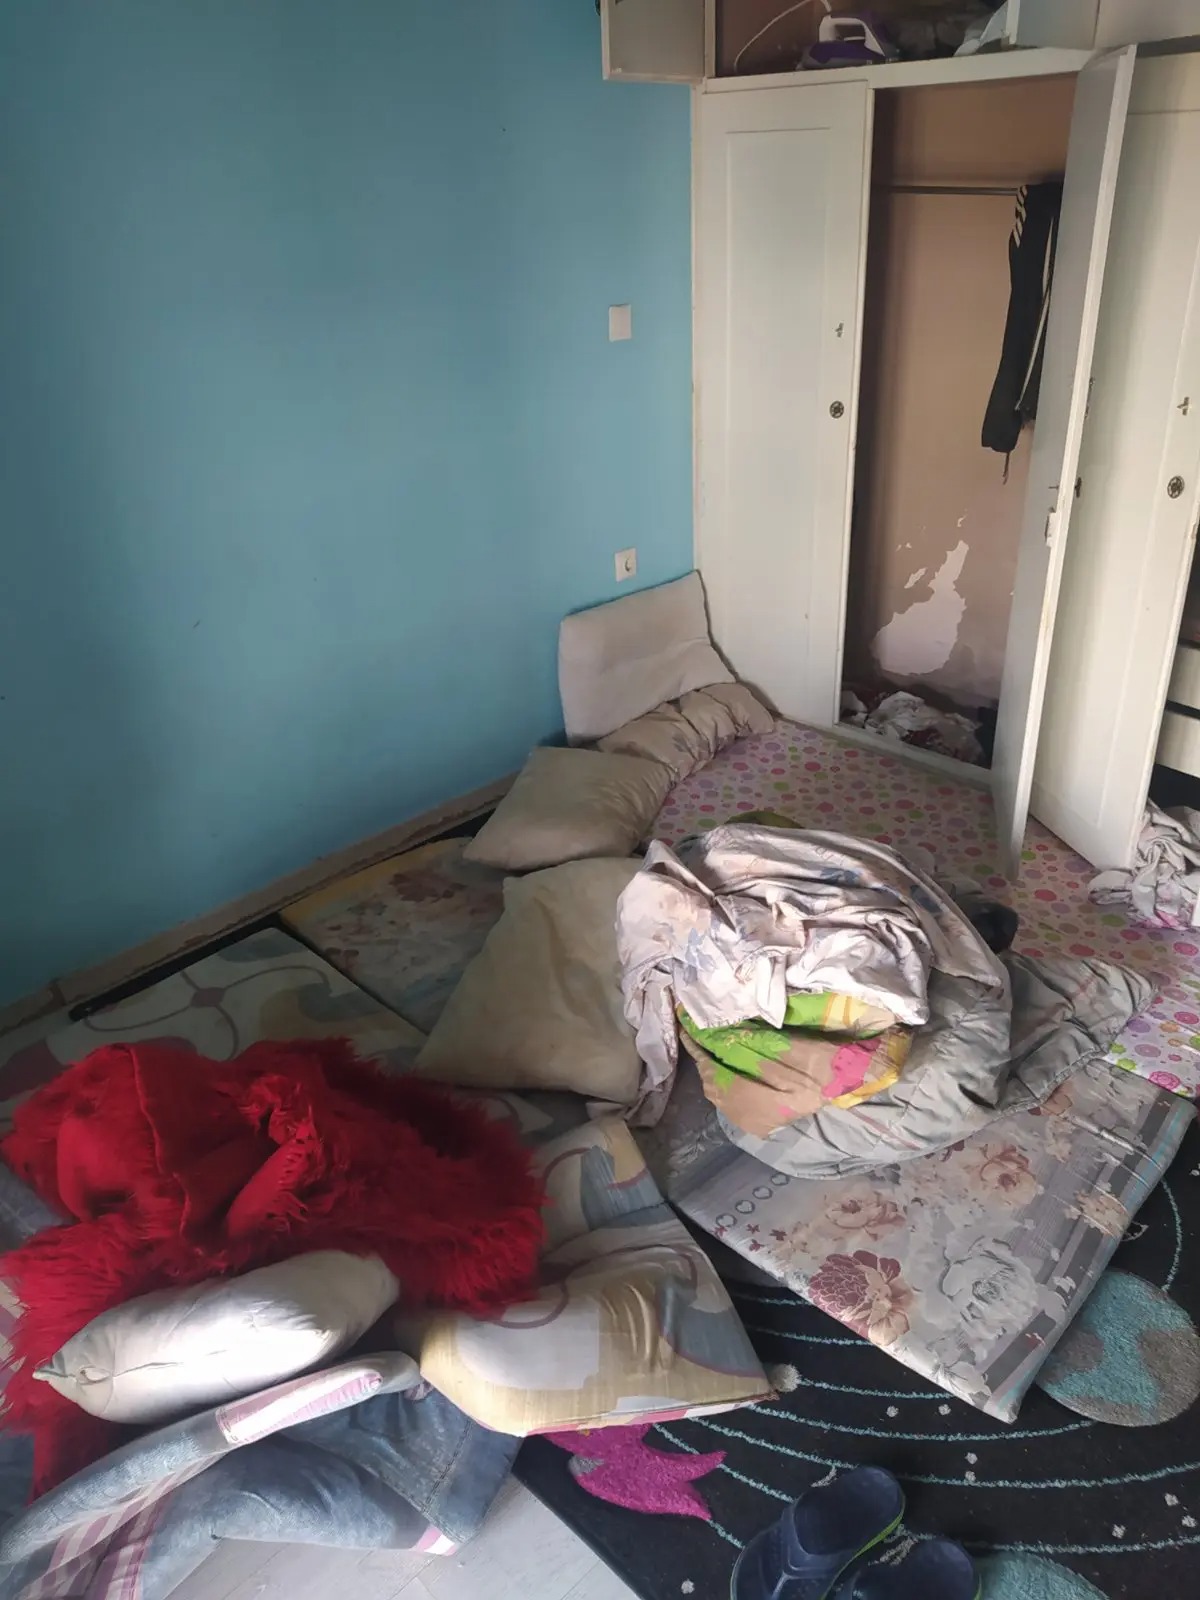 Άγιος Παντελεήμονας: 34χρονη είχε κάνει το σπίτι της άτυπο ξενώνα μεταναστών - ΦΩΤΟ